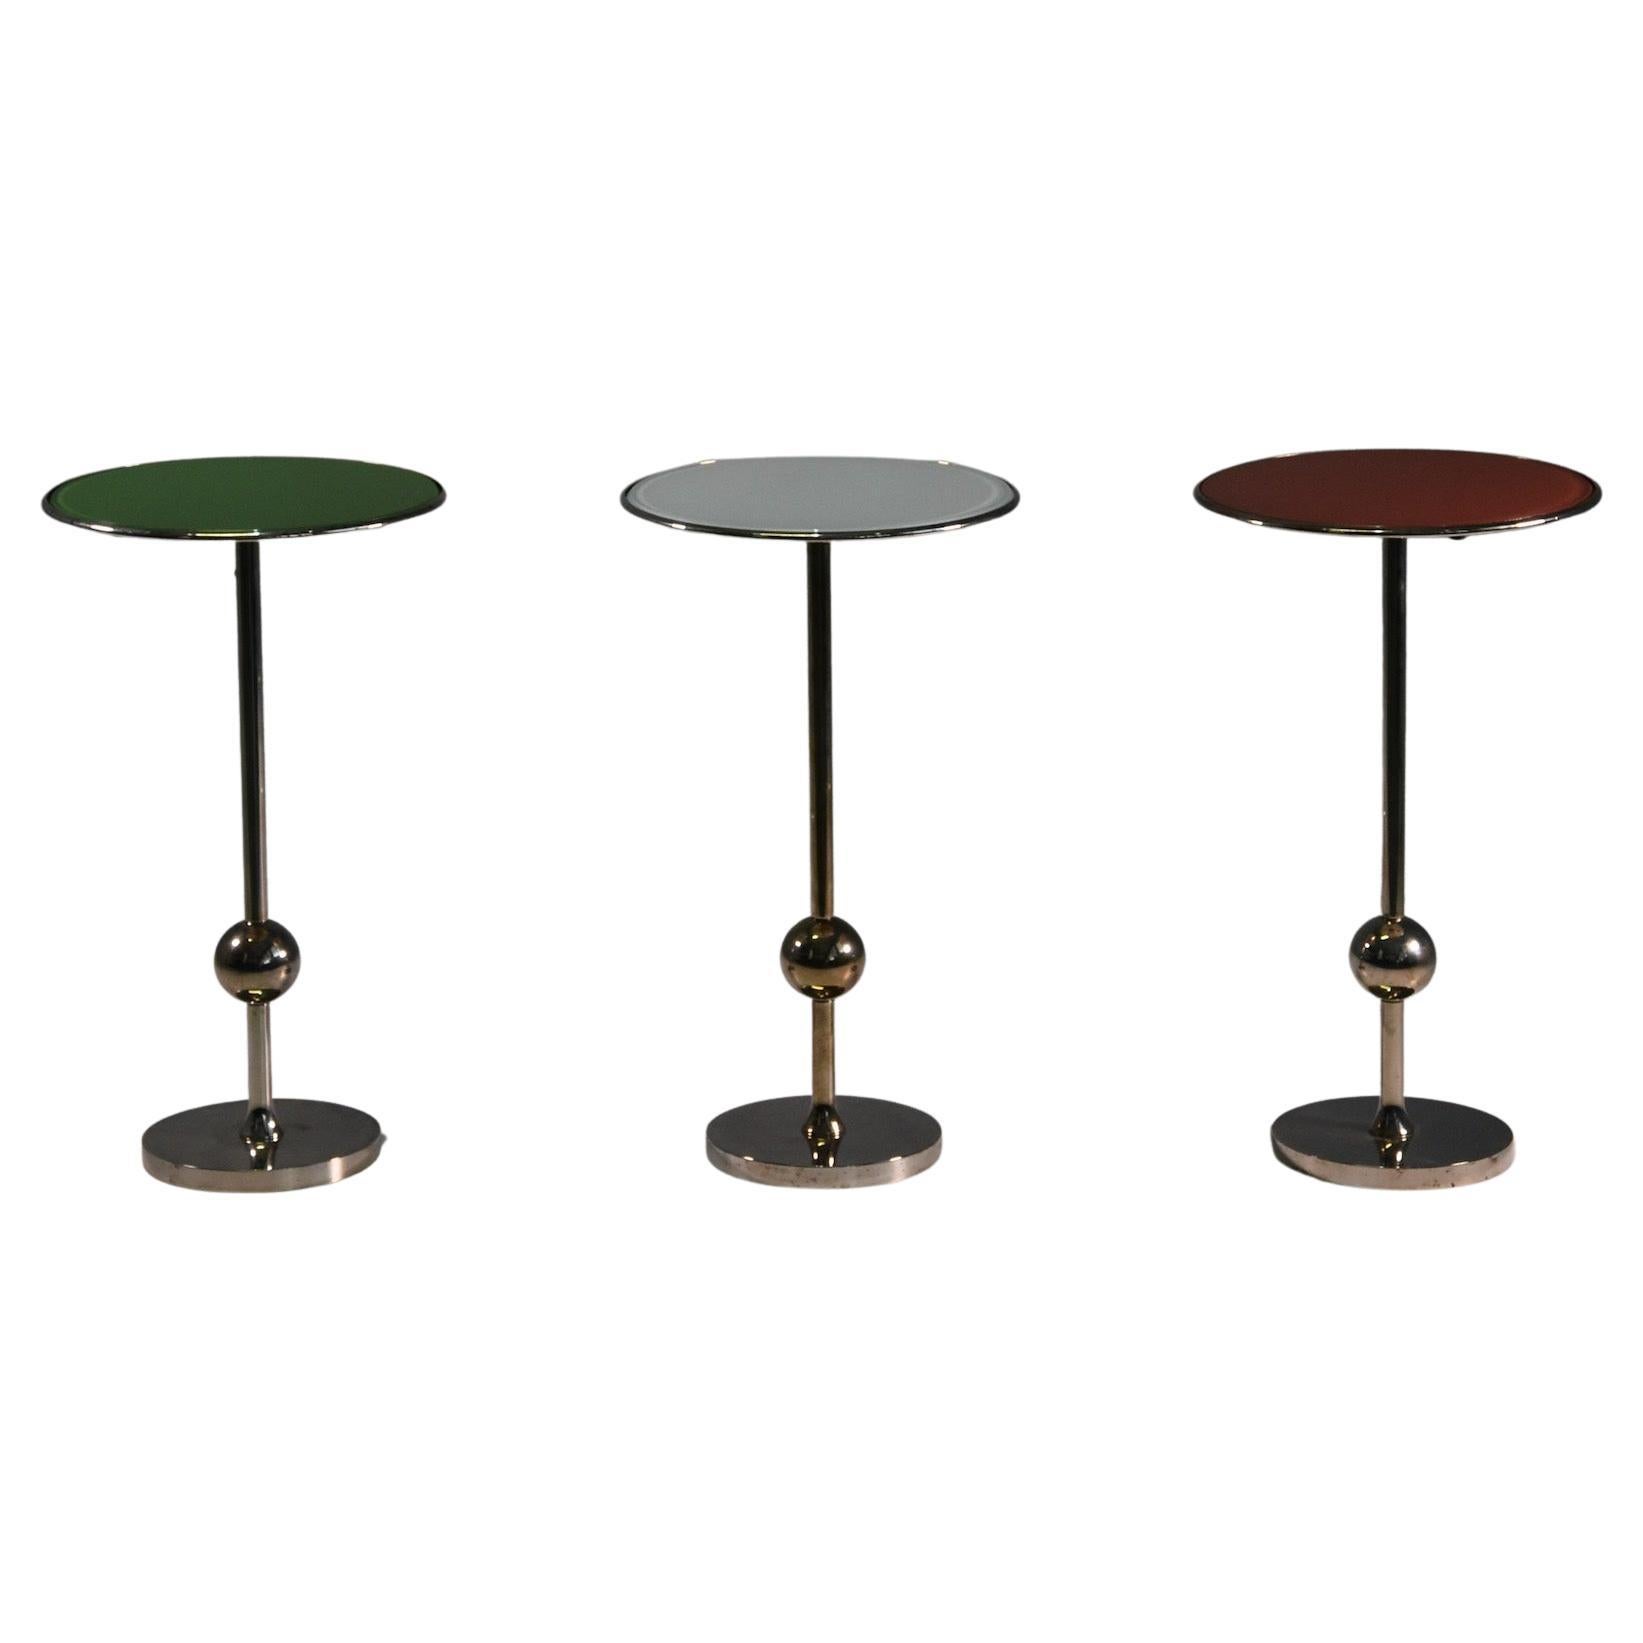 Rare Set of Three T1 Side Tables by Osvaldo Borsani I, 1950s